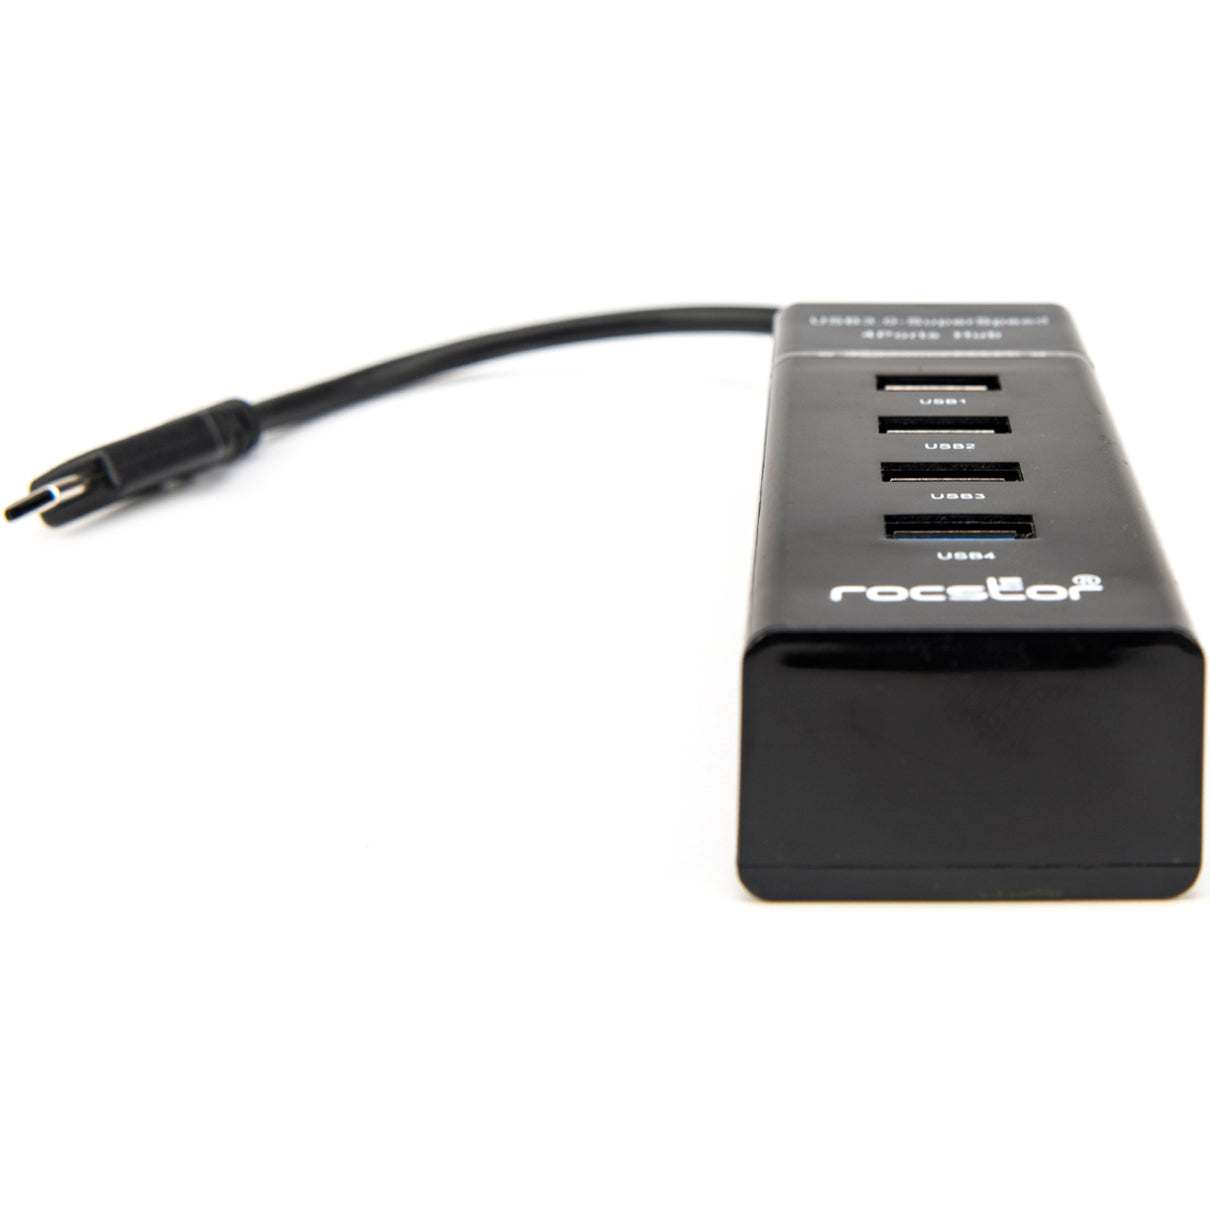 Rocstor Y10A228-B1 هاب USB C المحمولة النحيفة الممتازة ، 4 منافذ USB 3.0 ، تعمل بالحافلات